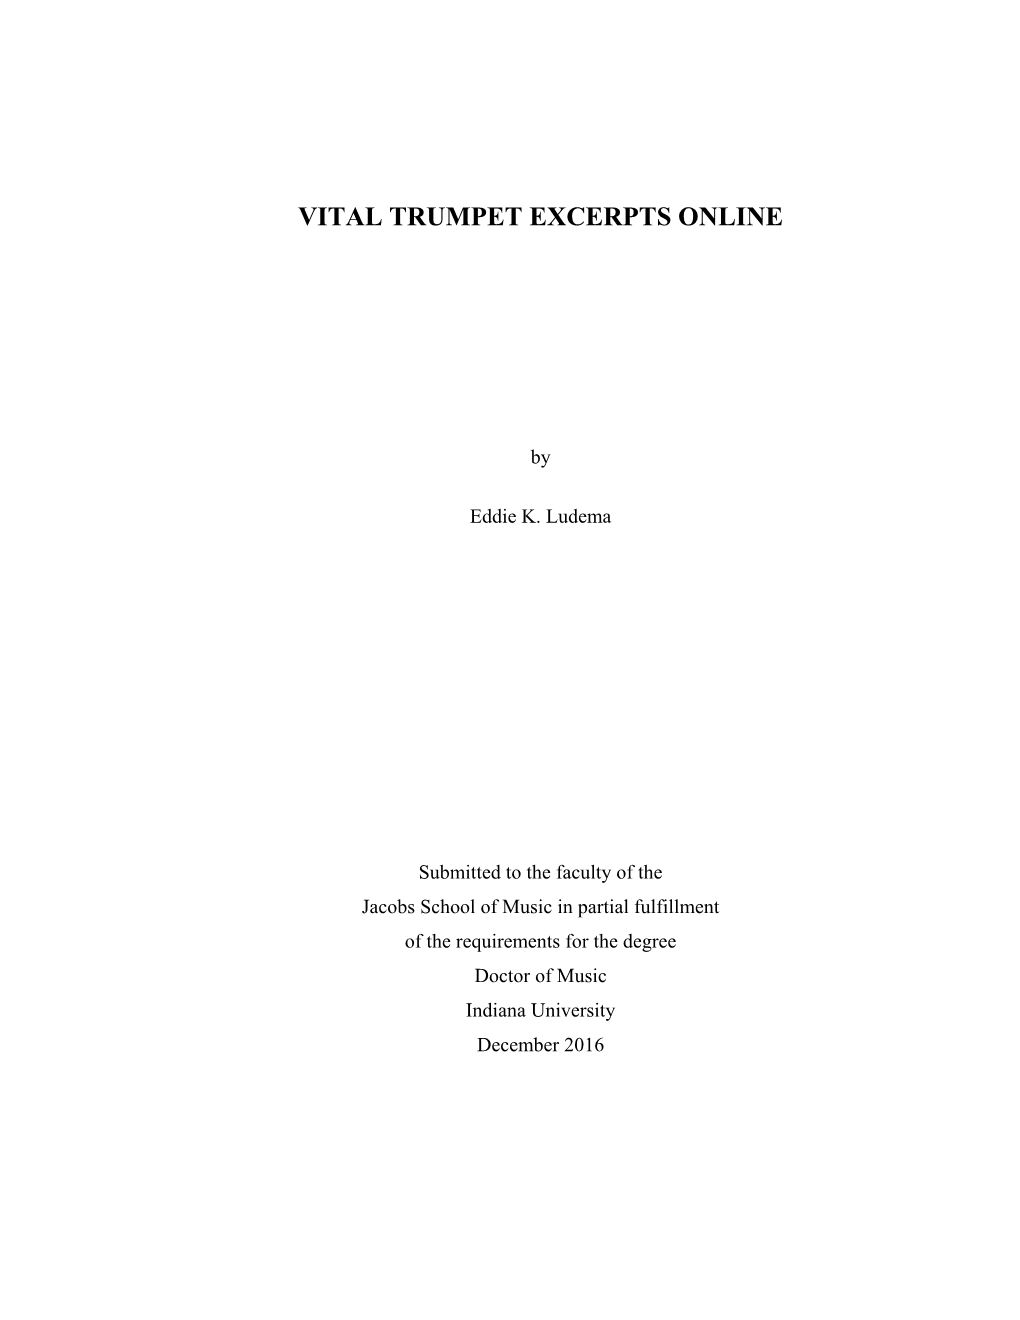 Vital Trumpet Excerpts Online